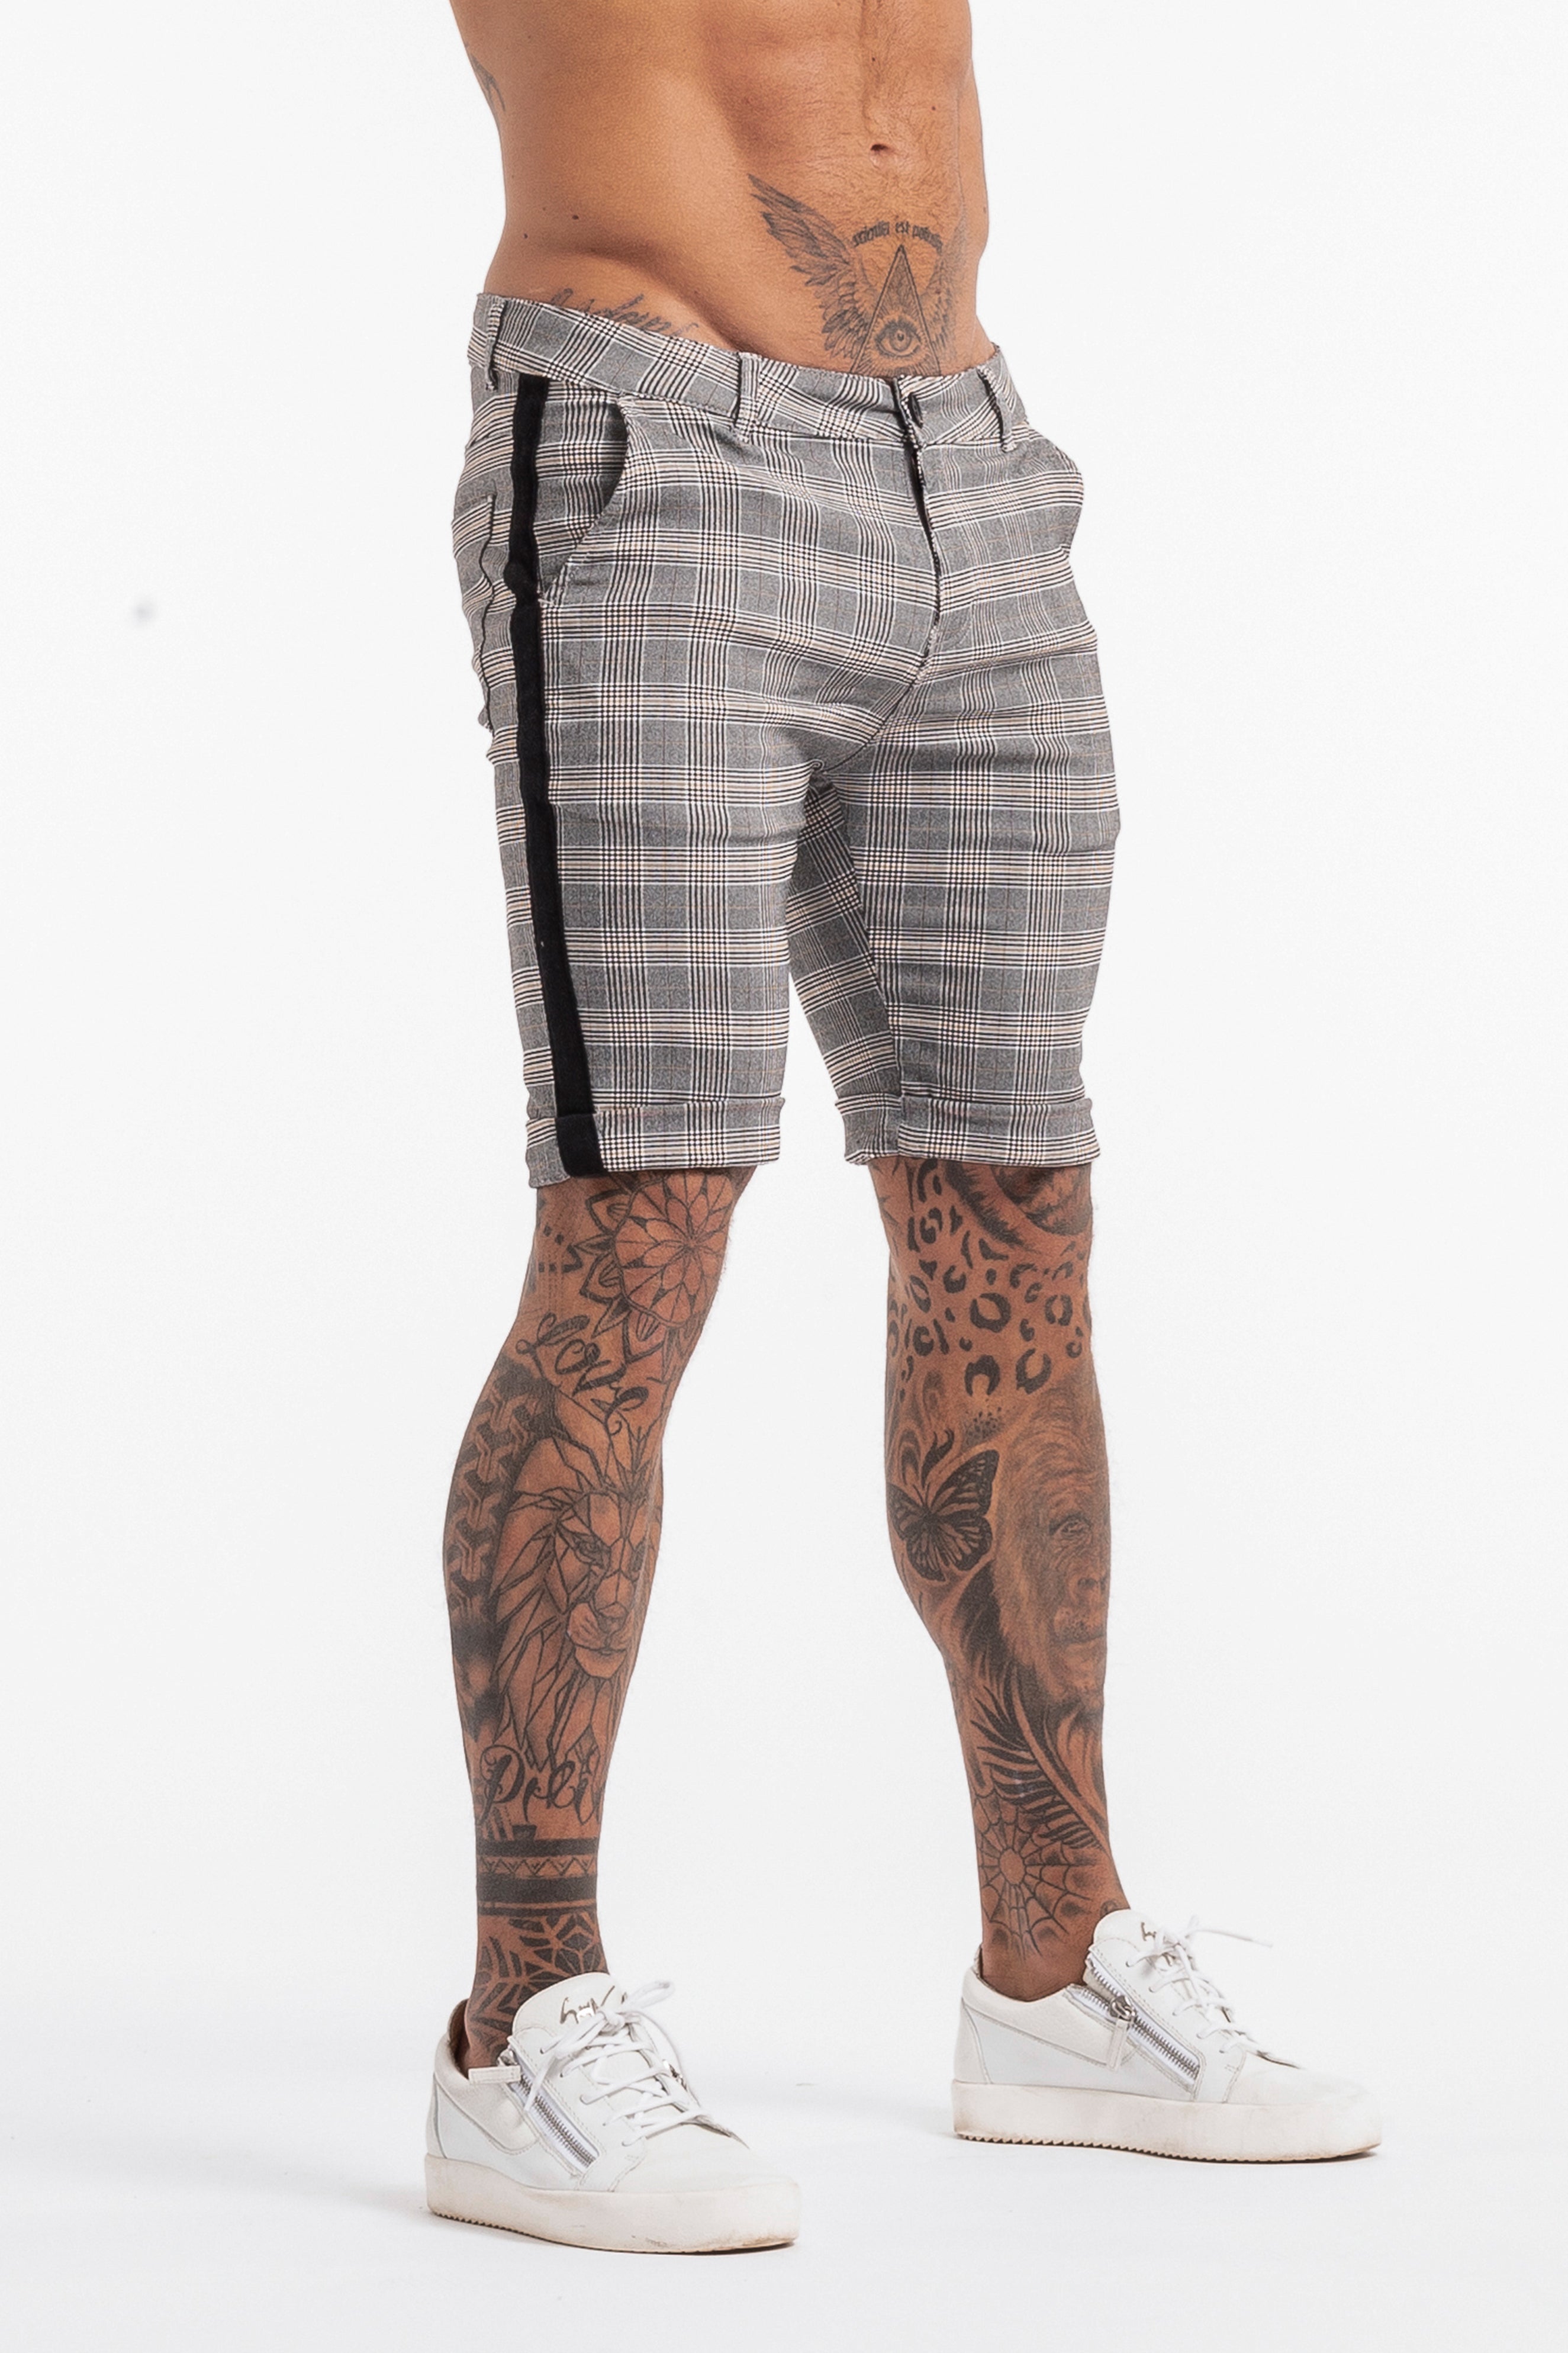 Check Shorts with Black Stripe - Stone Grey - SVPPLY. STUDIOS 